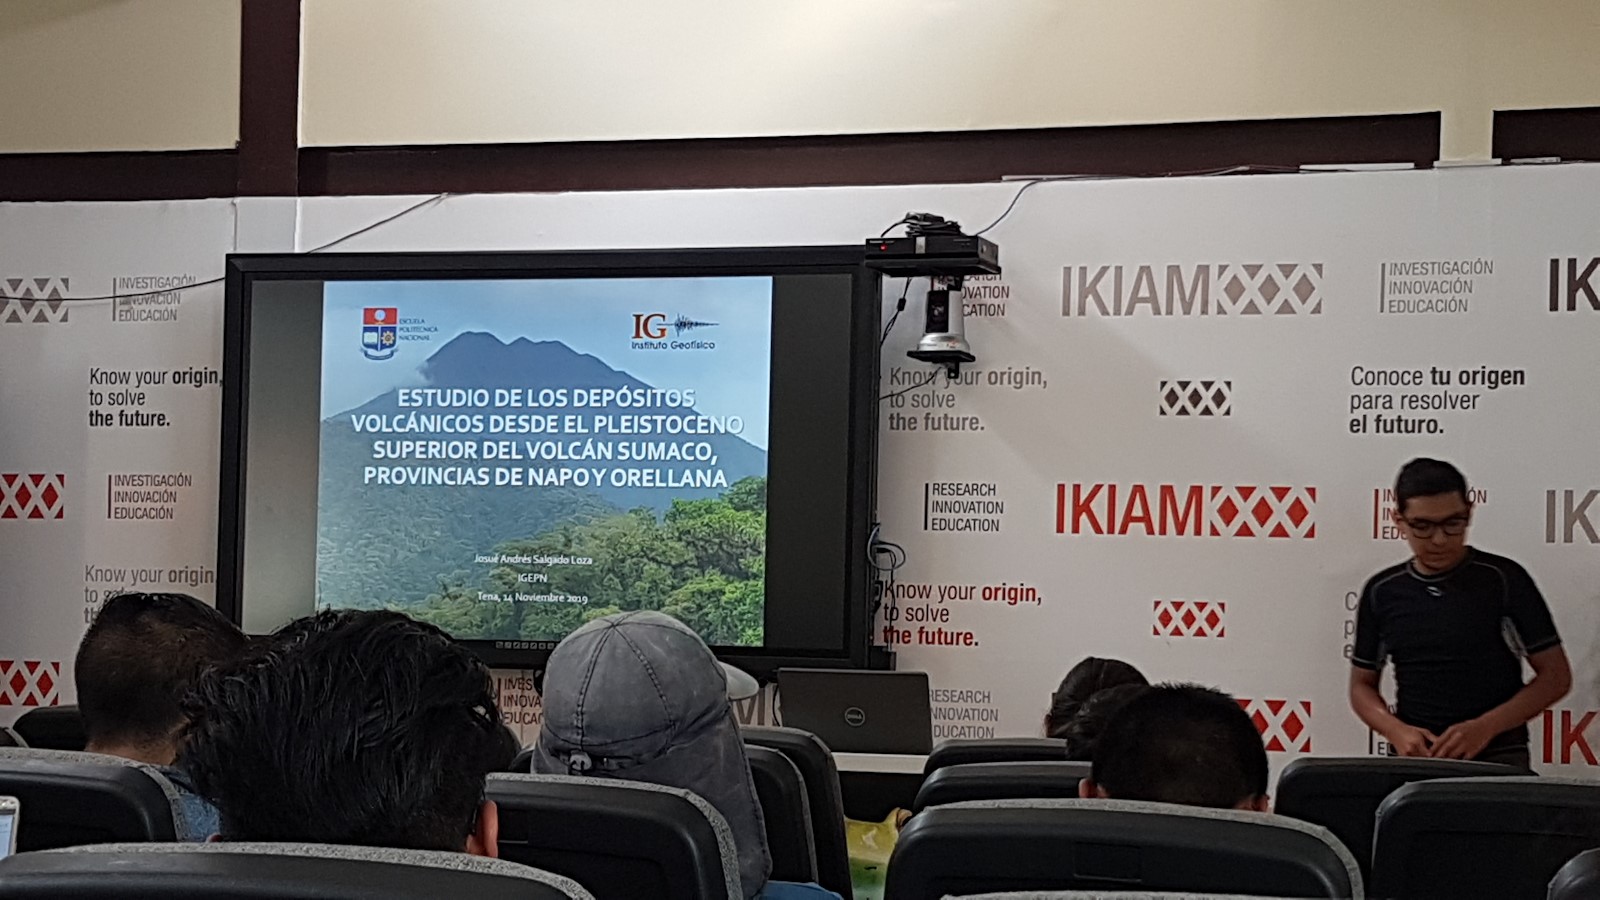 Charla “Estudio de los depósitos volcánicos desde el Pleistoceno superior del Volcán Sumaco, Provincias de Napo y Orellana”, en la Universidad Regional Amazónica-IKIAM